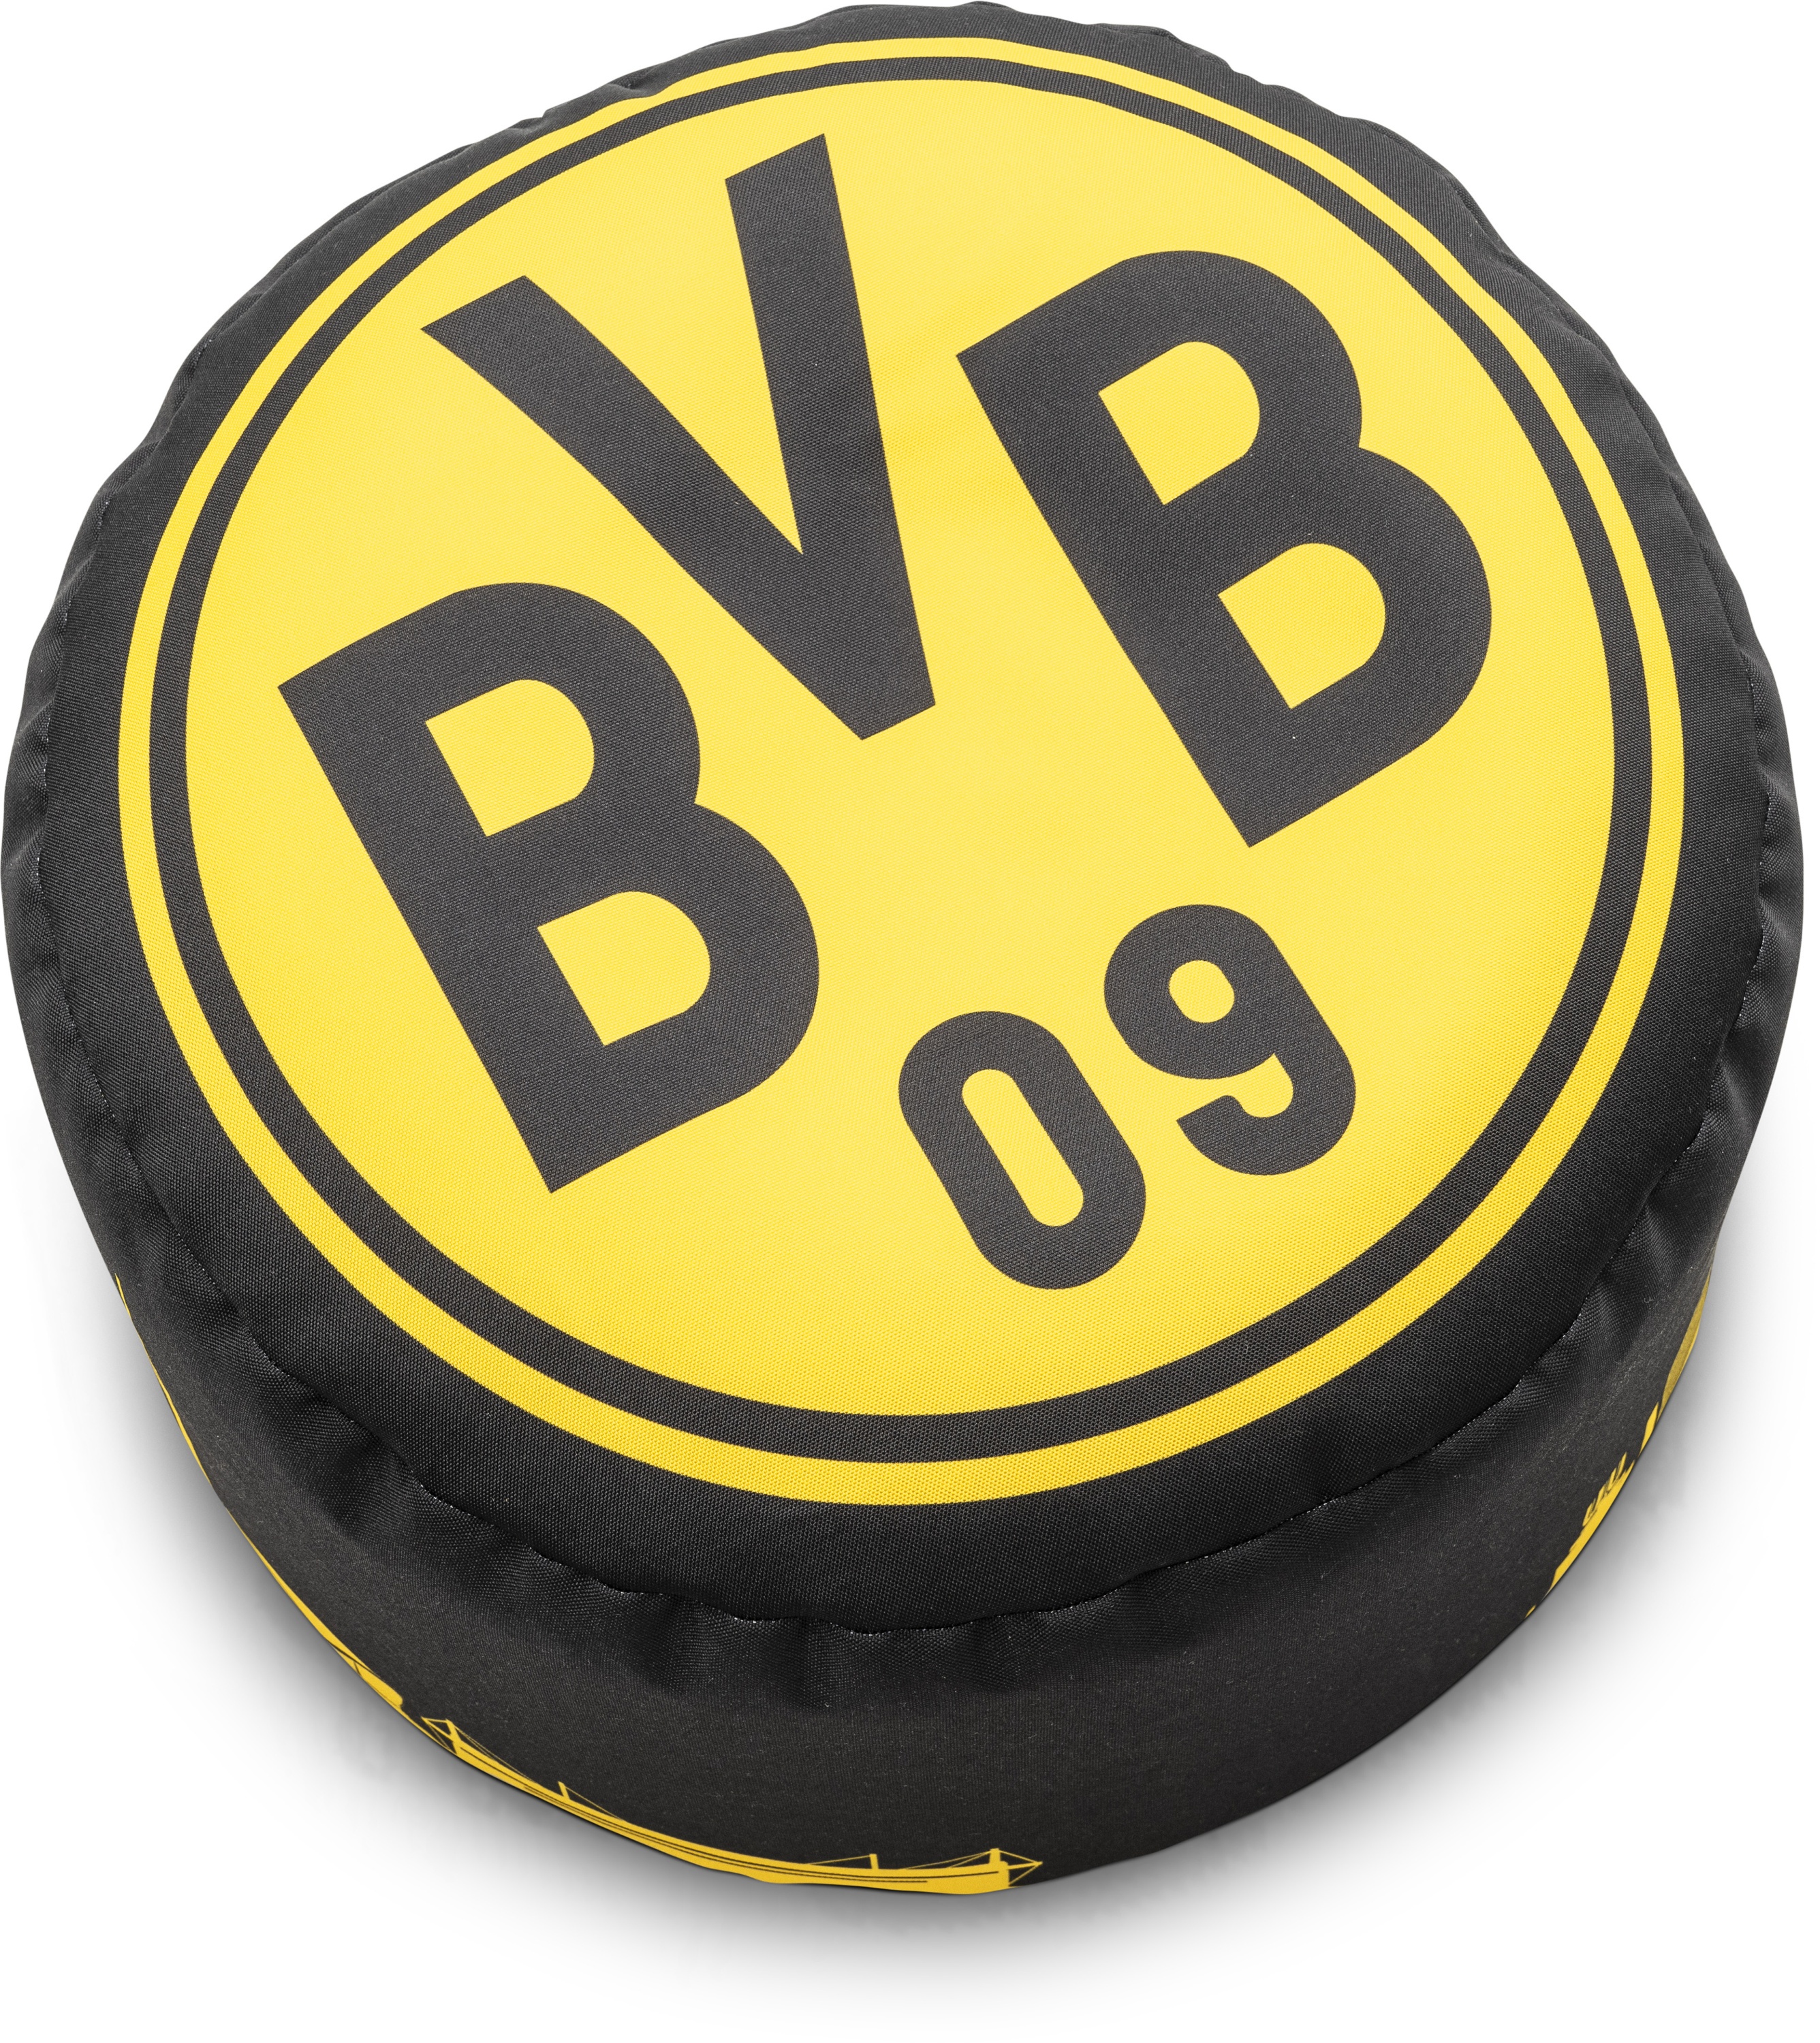 Hocker BVB 09 (DH 50x30 cm)